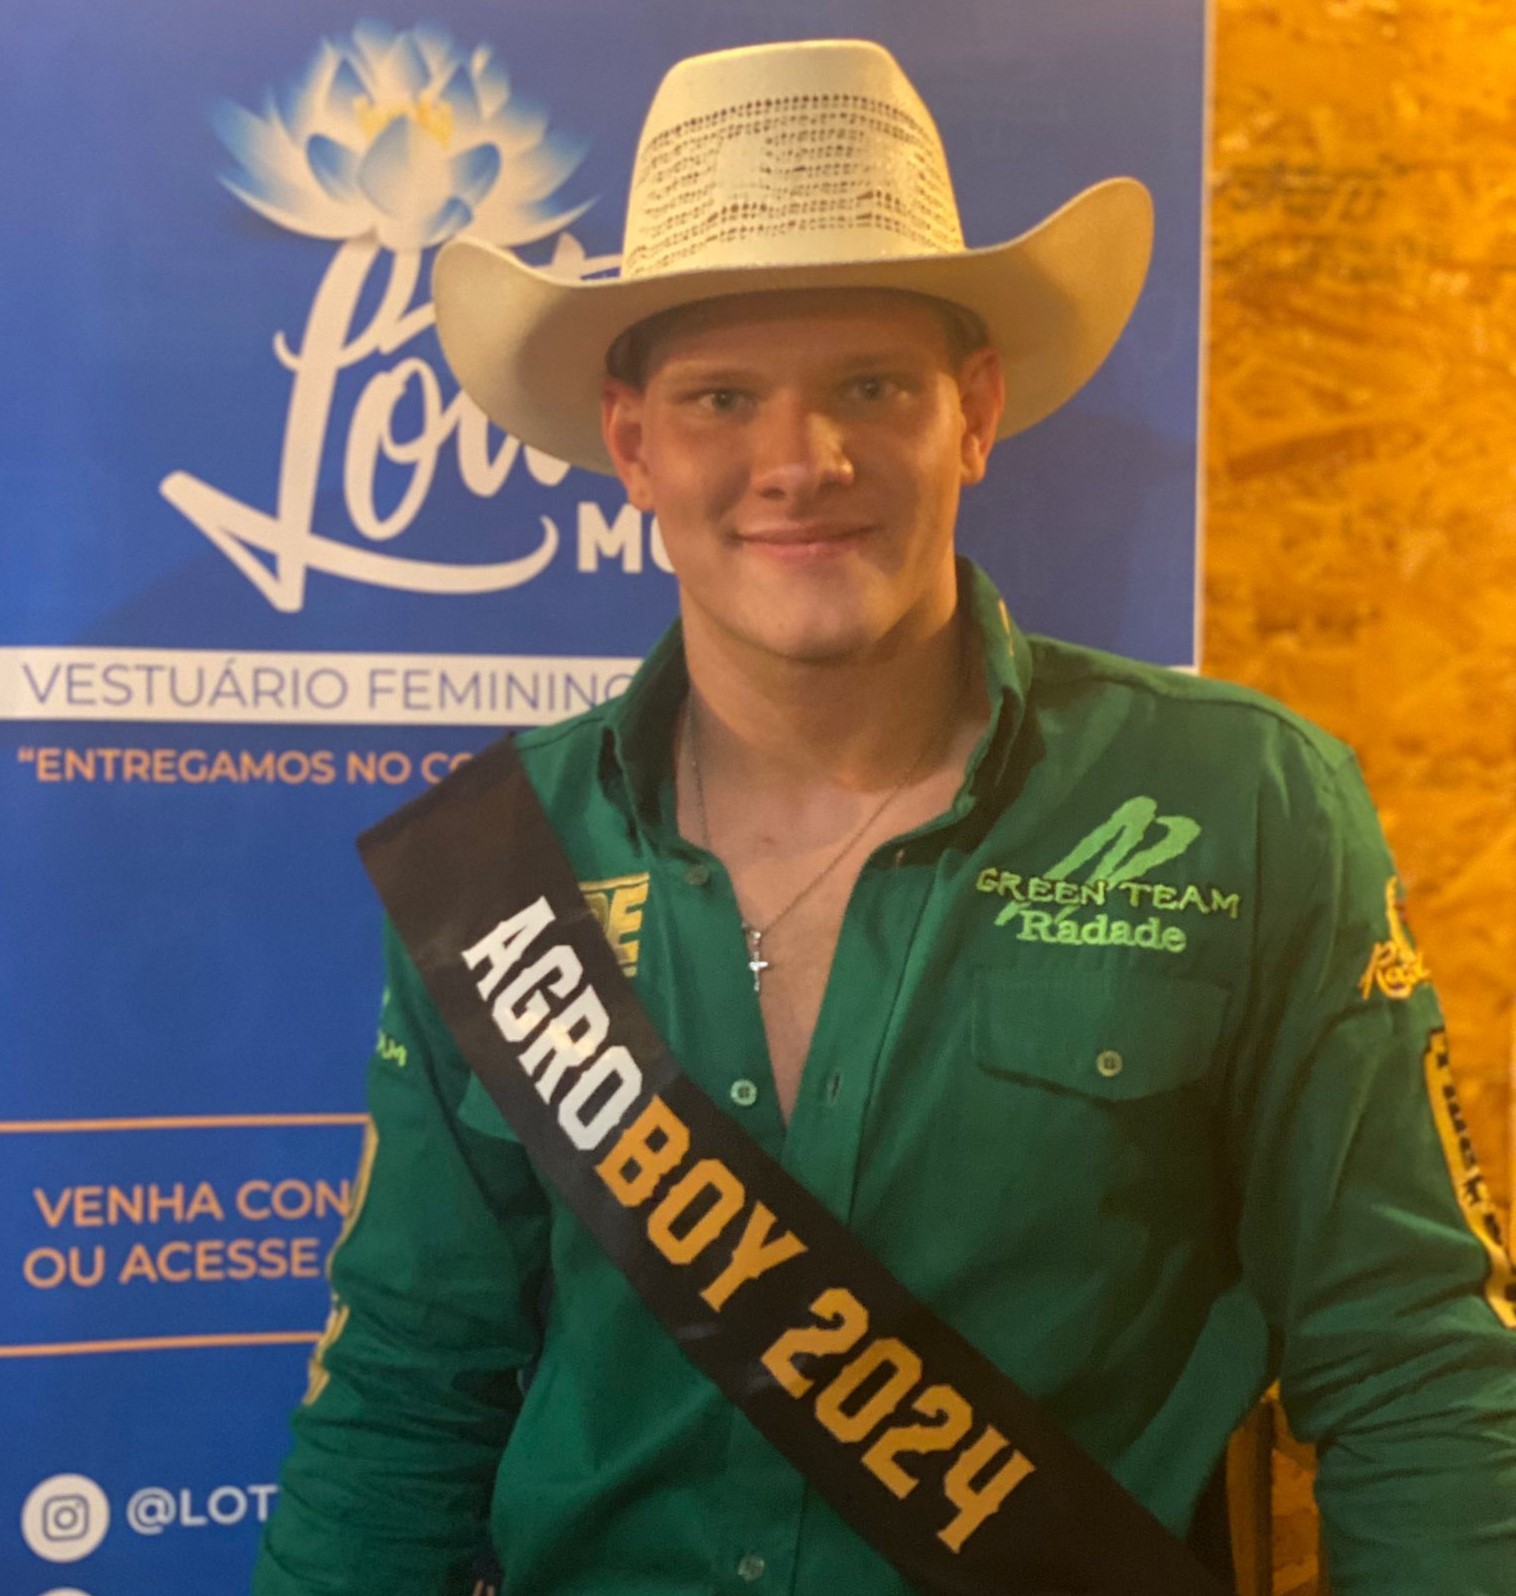 Jovem de SC ganha título de 'Príncipe do Rodeio' em concurso que elegeu melhor 'agroboy' nos EUA; VÍDEO